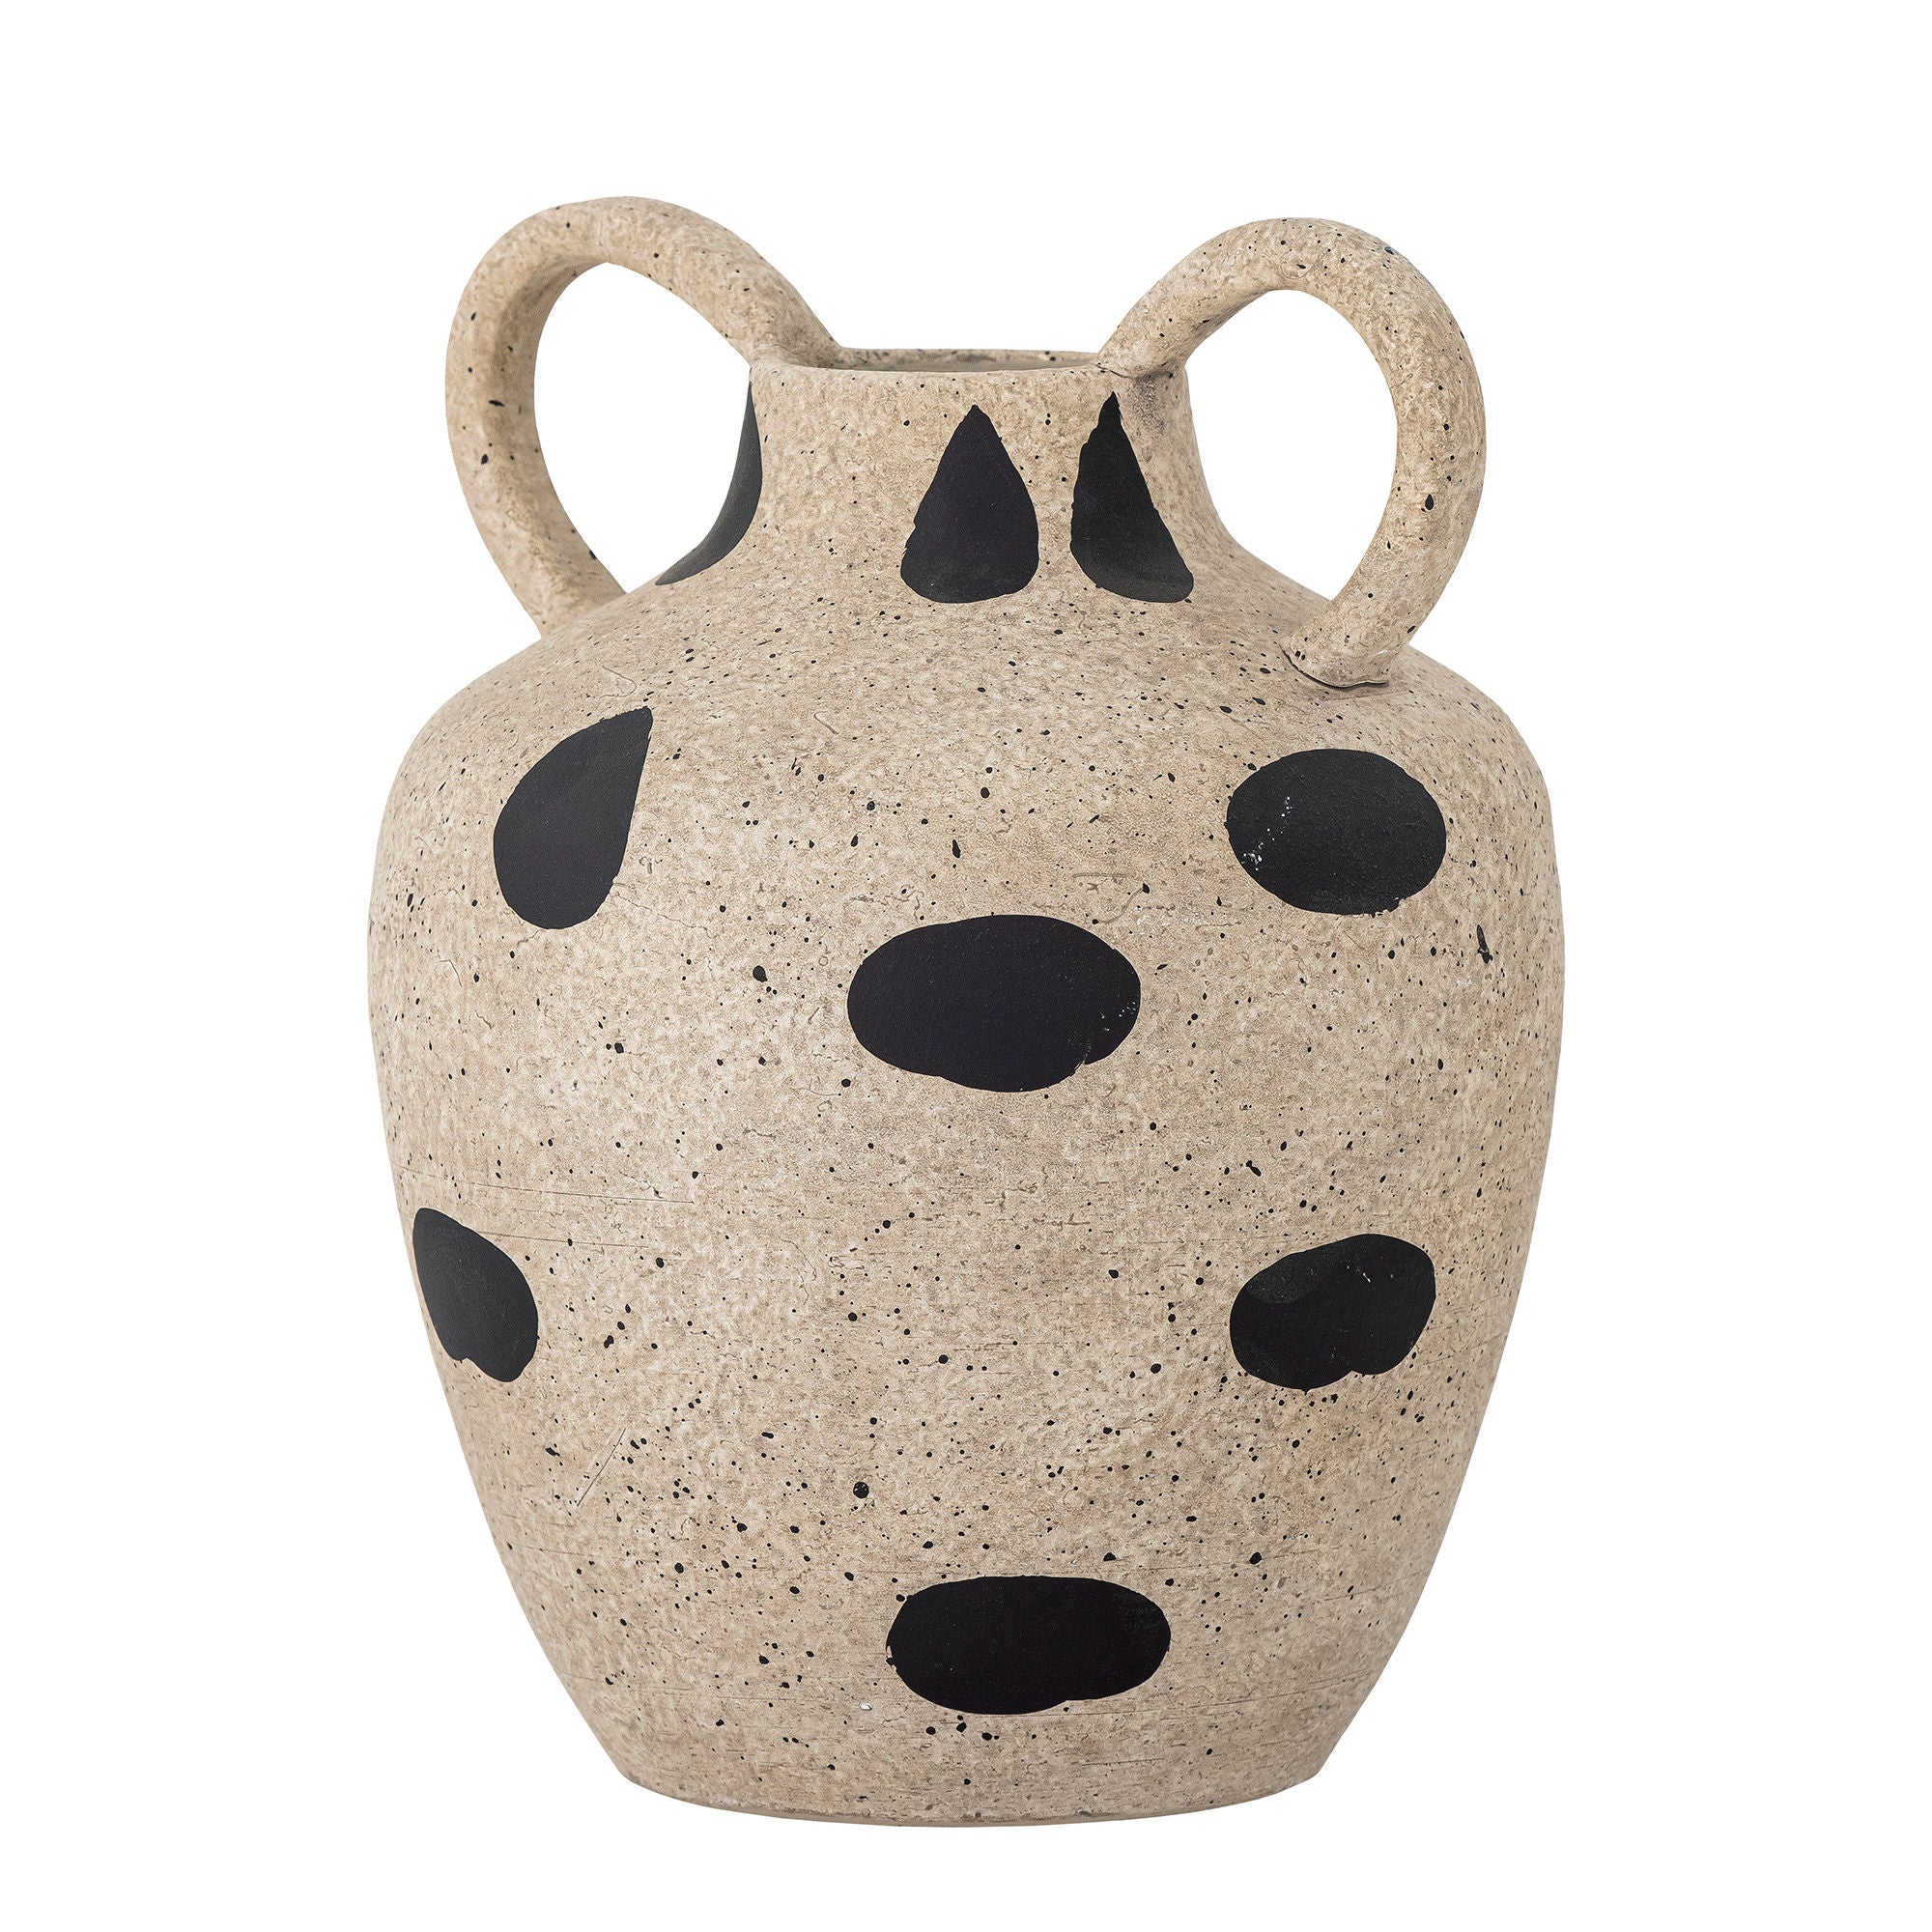 Vase "Taye" natural stoneware